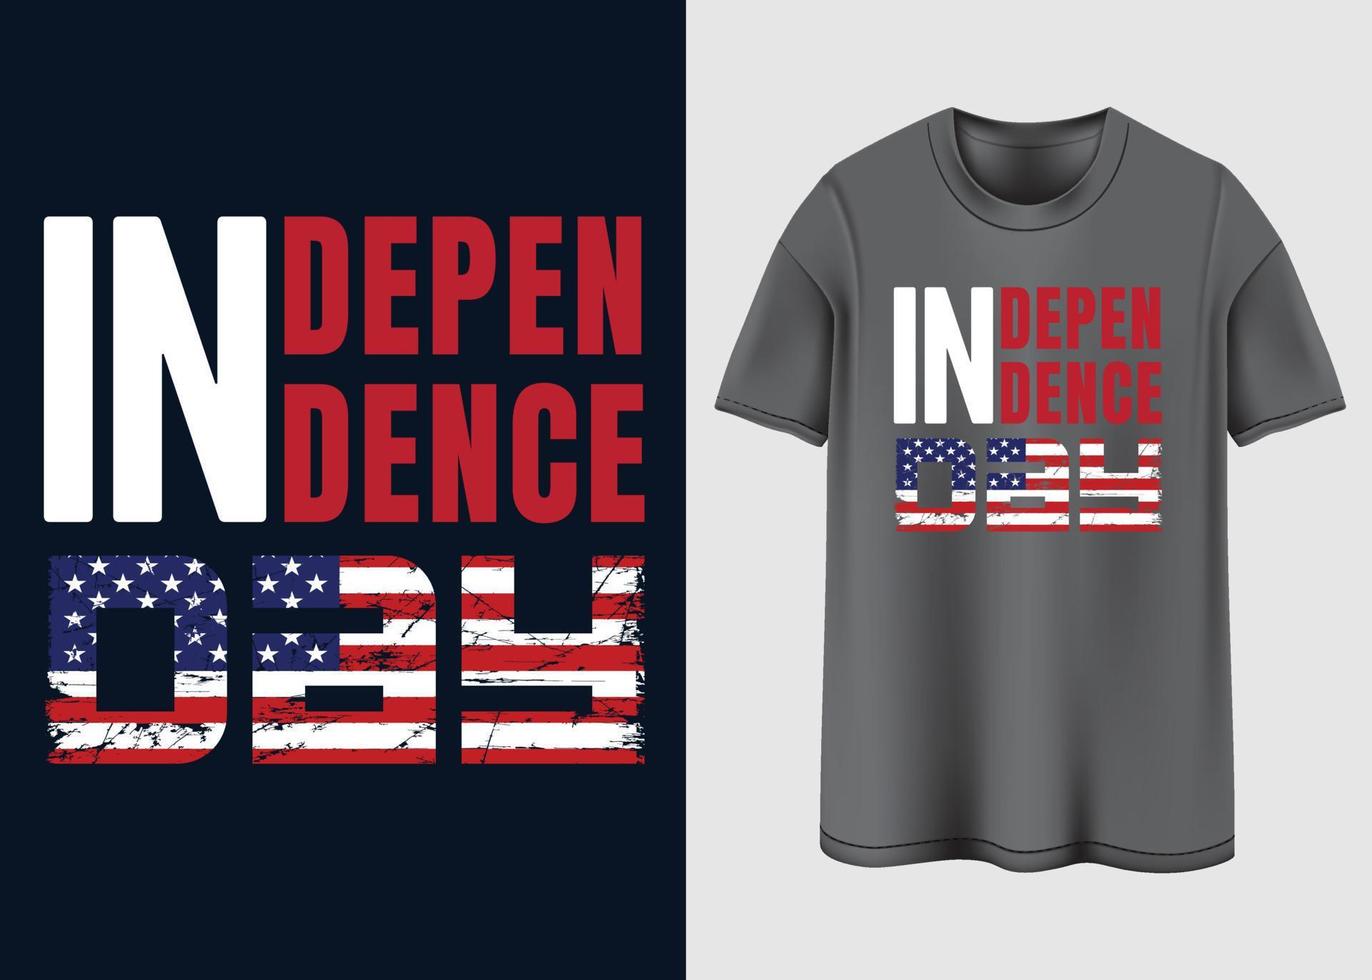 glad självständighetsdagen t-shirt design vektor